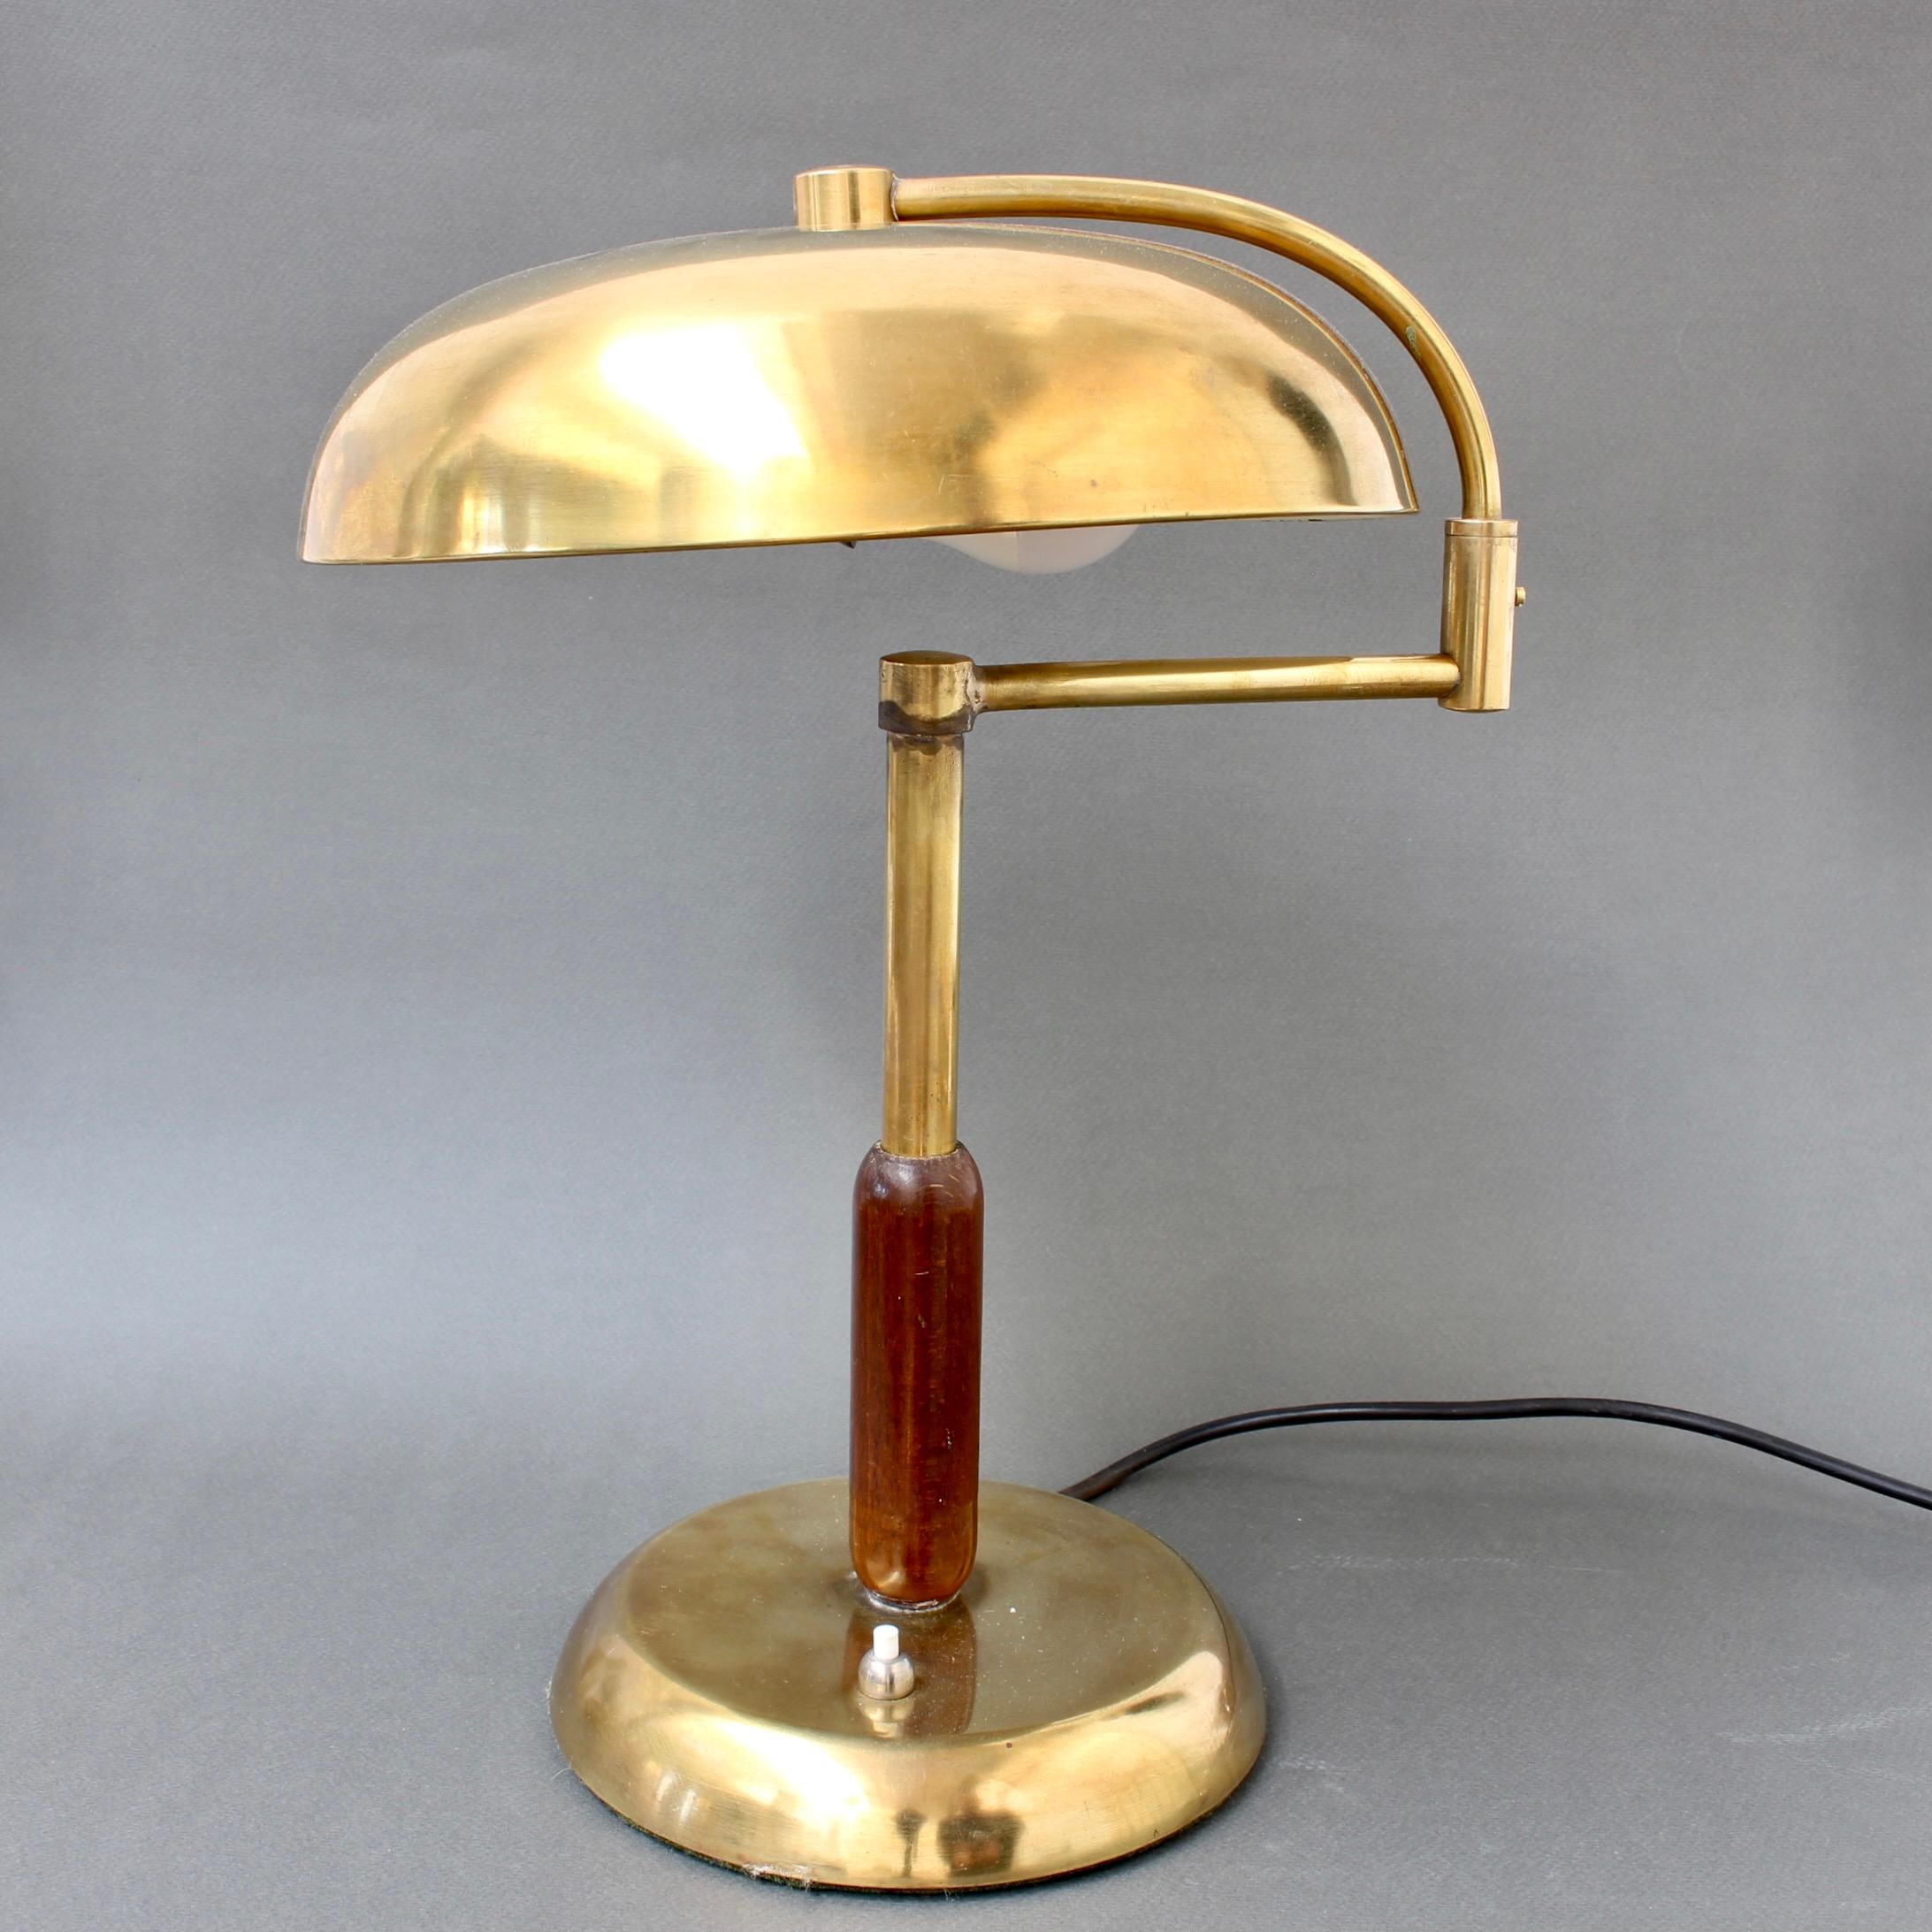 Italienische Vintage-Tischlampe aus Messing mit Schwenkarm (um 1950). Eine zeitlose Schreibtischlampe mit reizvollen Vintage-Details und einem abgerundeten Schirm, der sich auf dem gewichtigen Sockel dreht. Das Messing weist eine charakteristische,